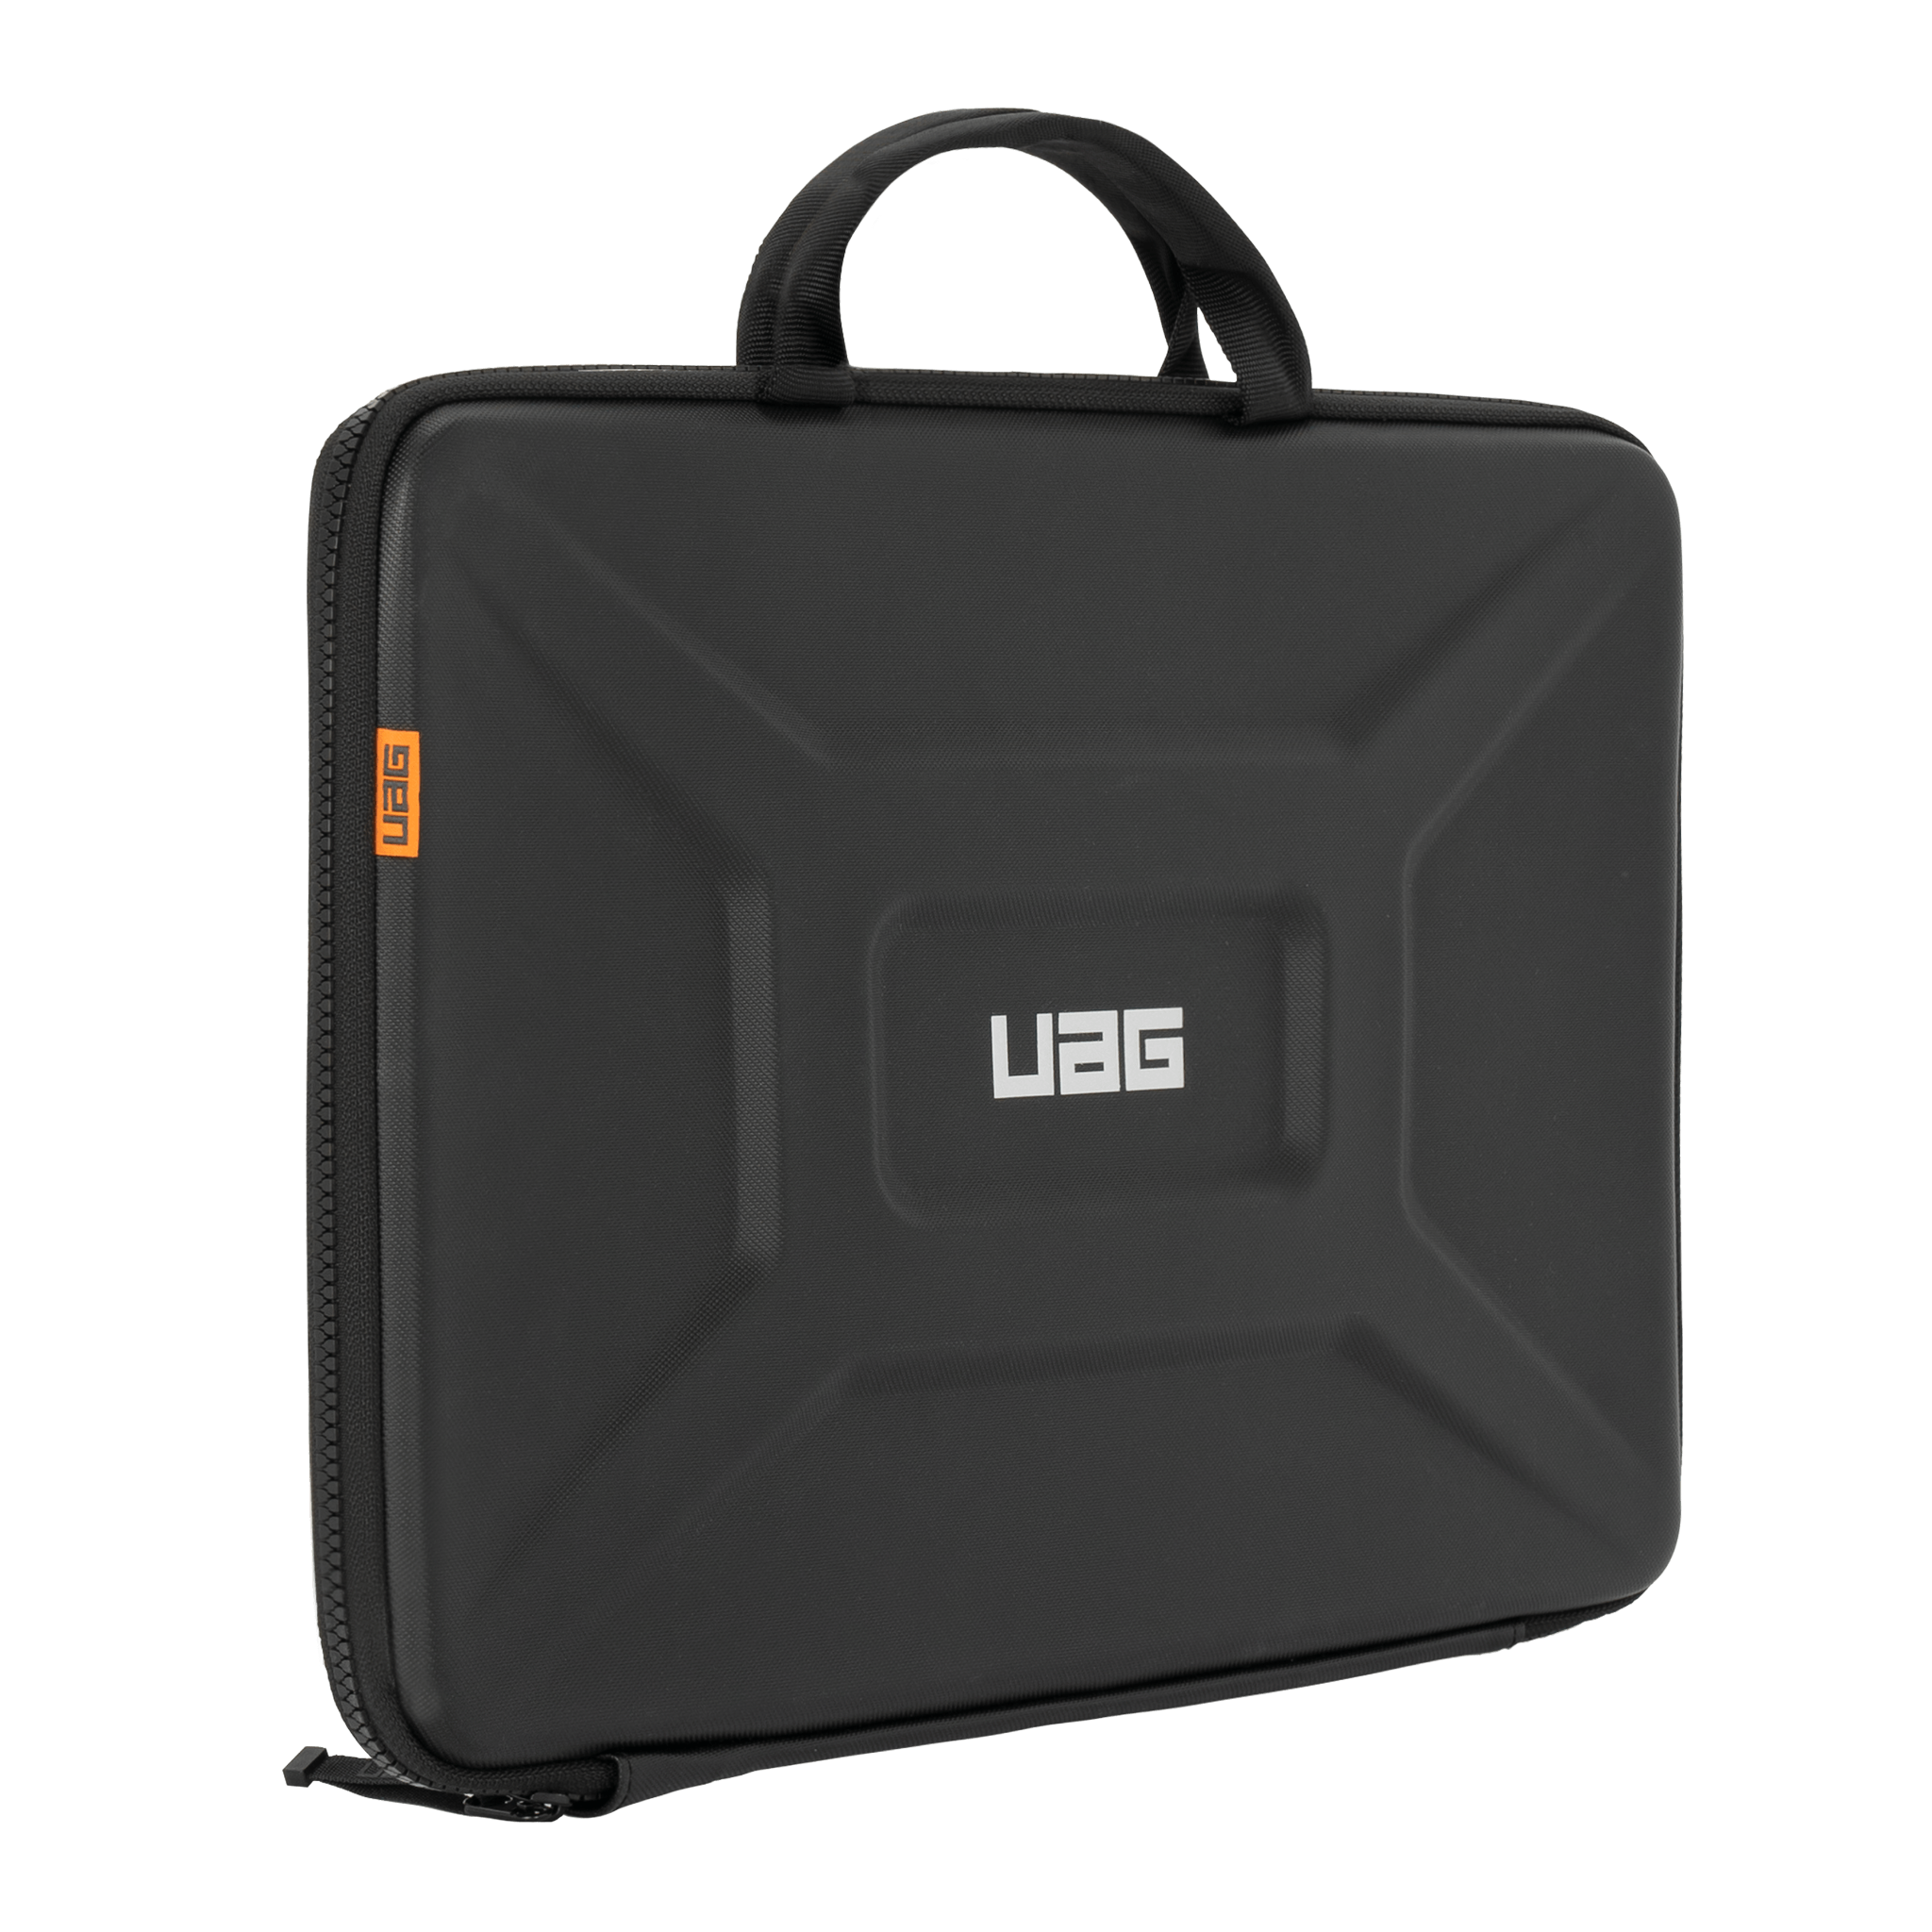  Túi chống sốc UAG Large Sleeve có quai xách cho Laptop/Tablet [15-16 inch] 